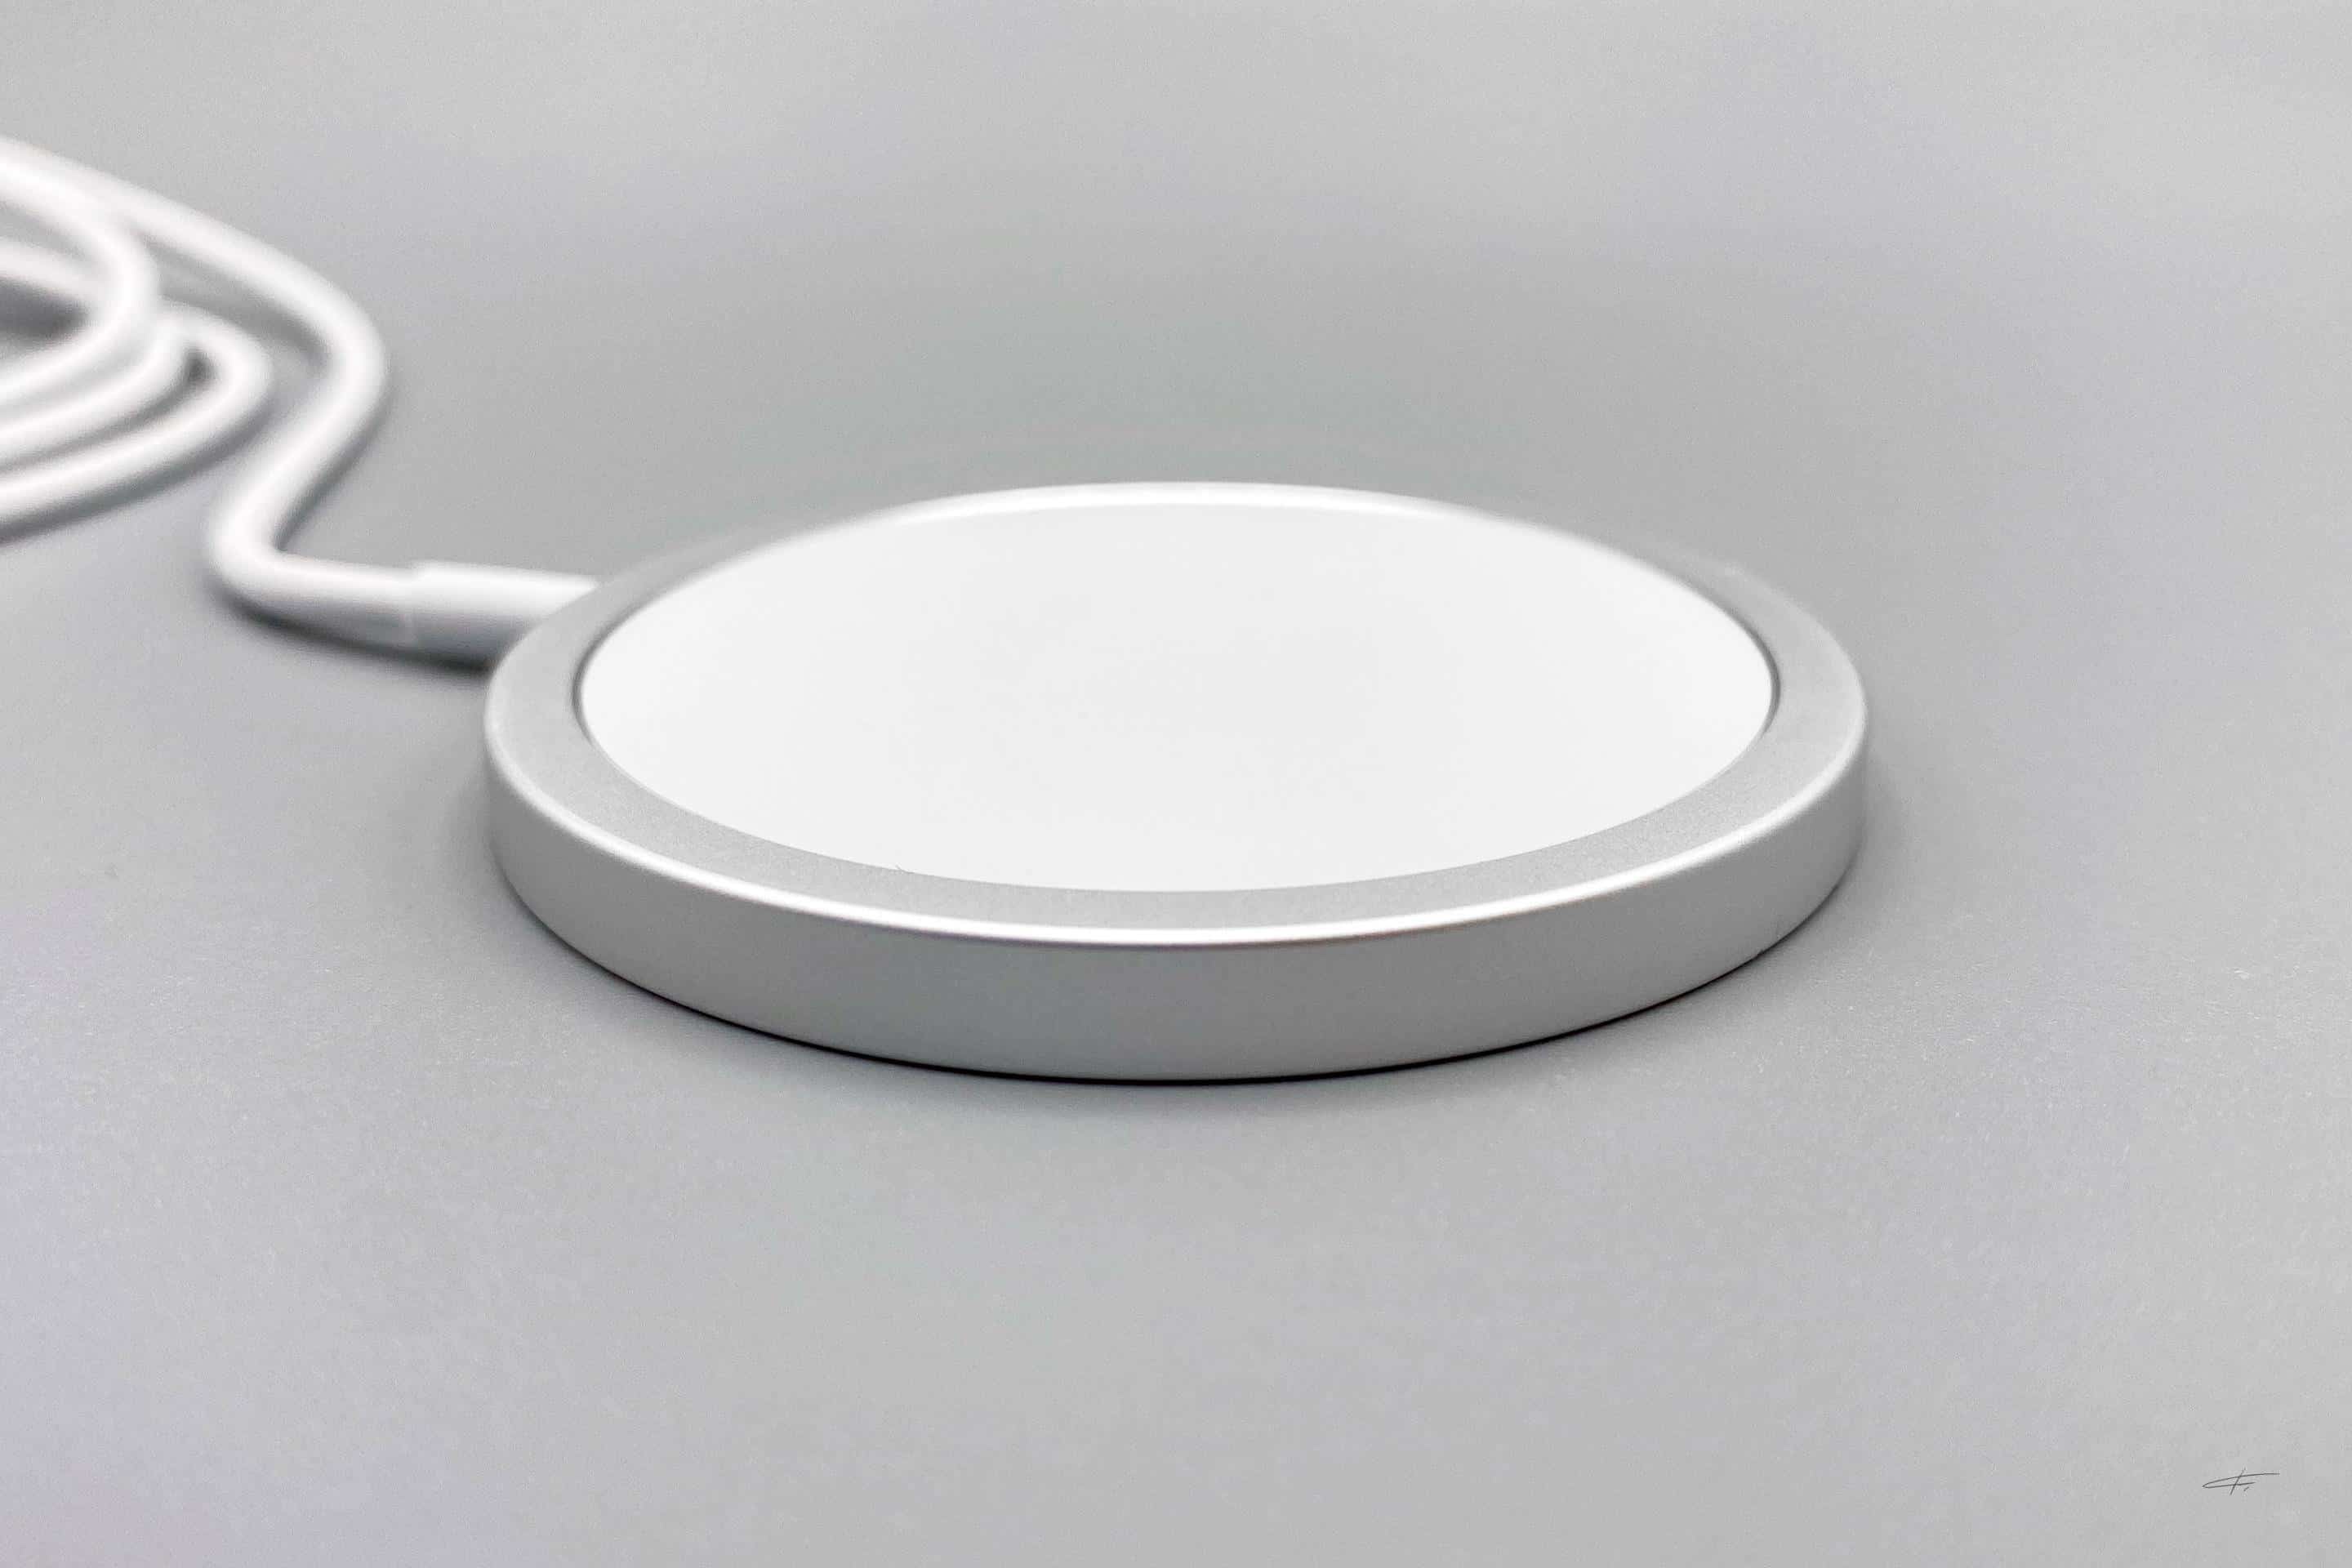 MagSafe: carregador sem fio torna a recarga do iPhone 12 até 2x mais lenta  - Olhar Digital